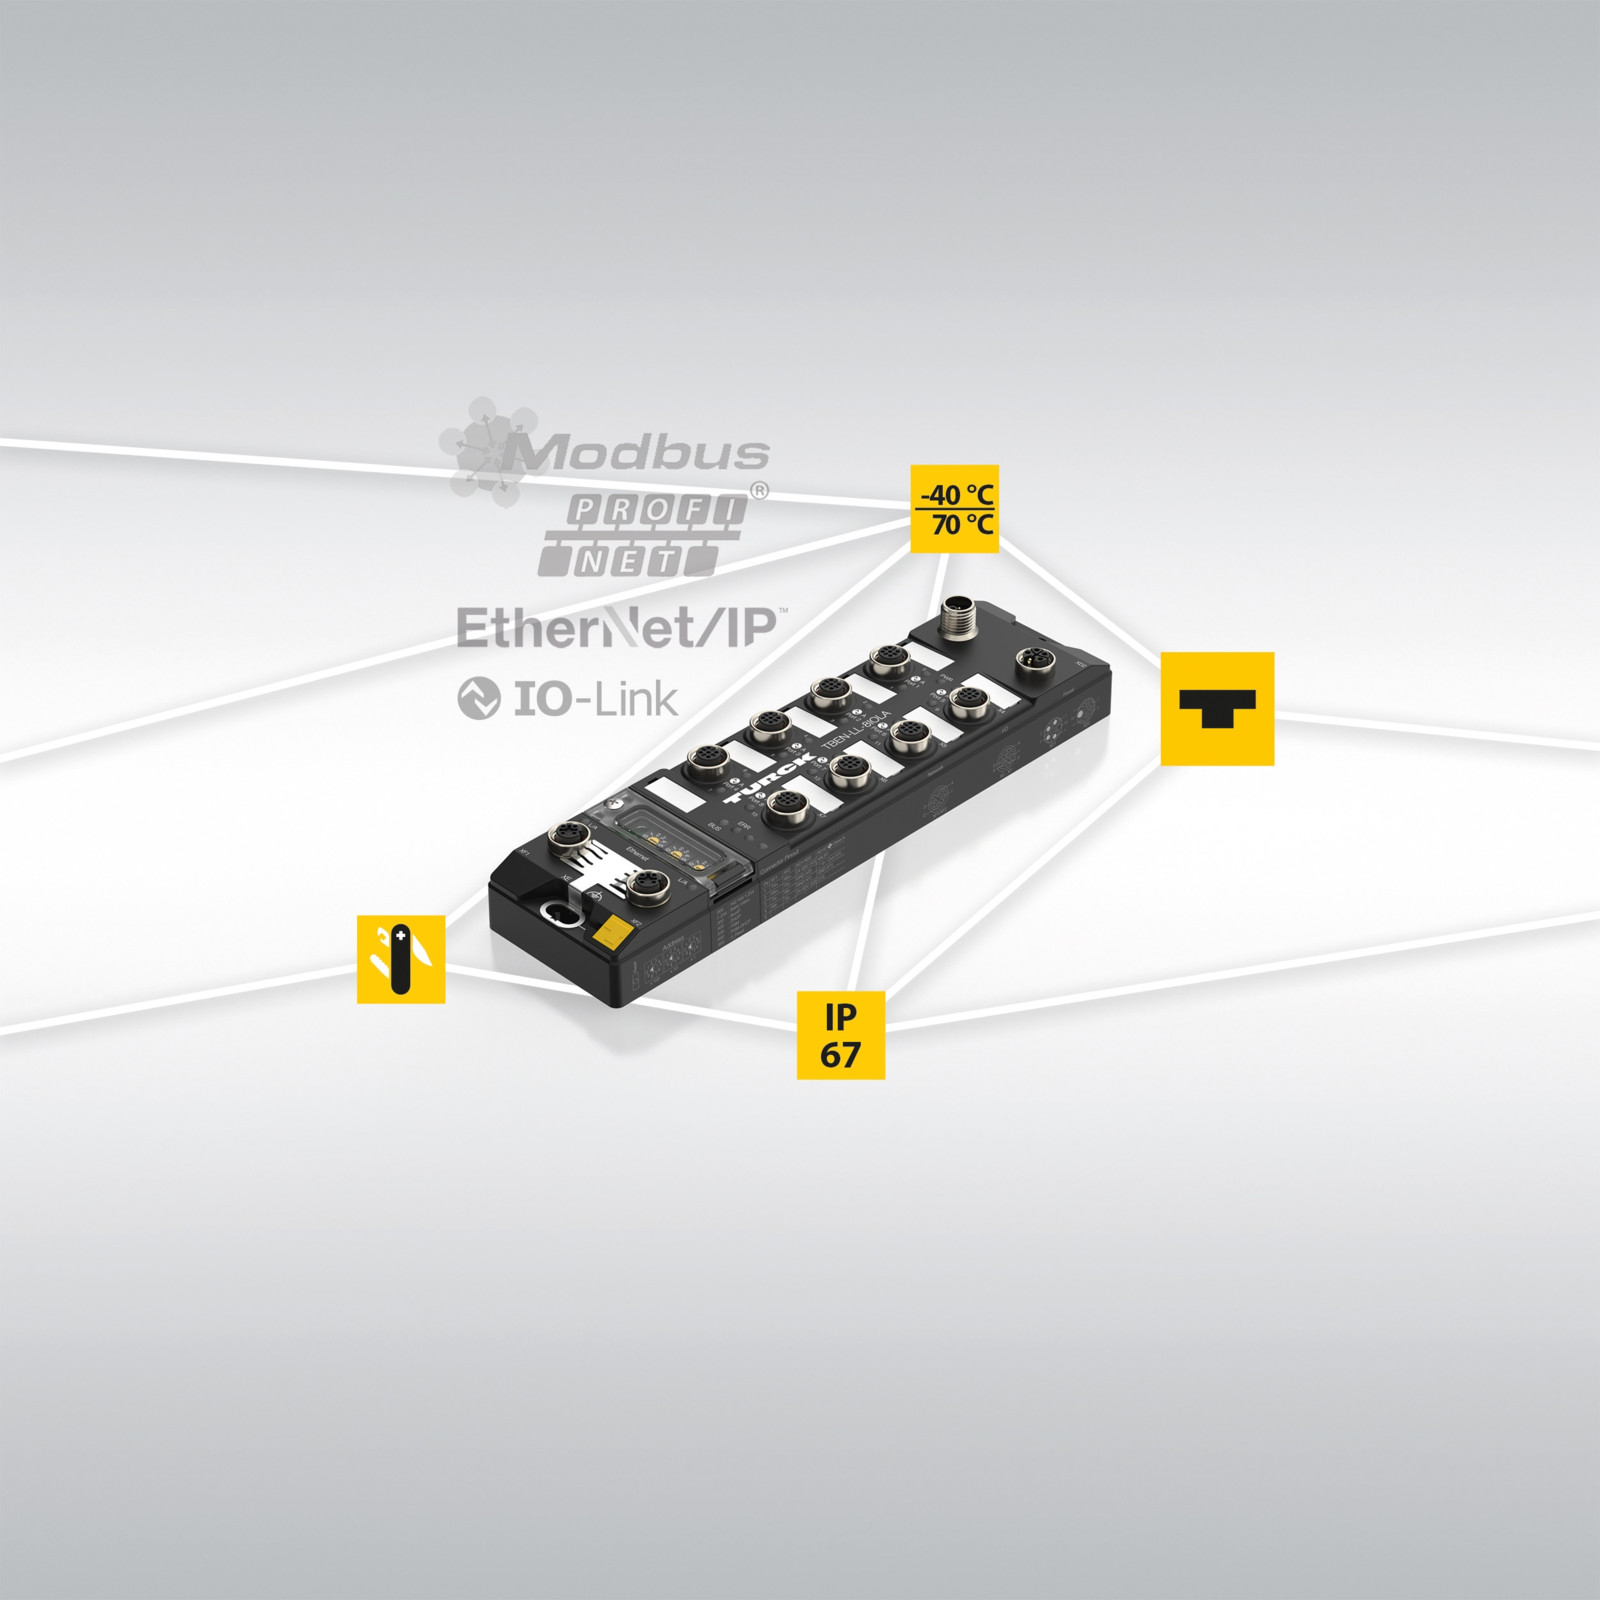 Mit 8 Class-A-Ports für IO-Link oder 16 DXP-Kanäle garantiert der Class-A-Master Anwendern hohe Flexibilität